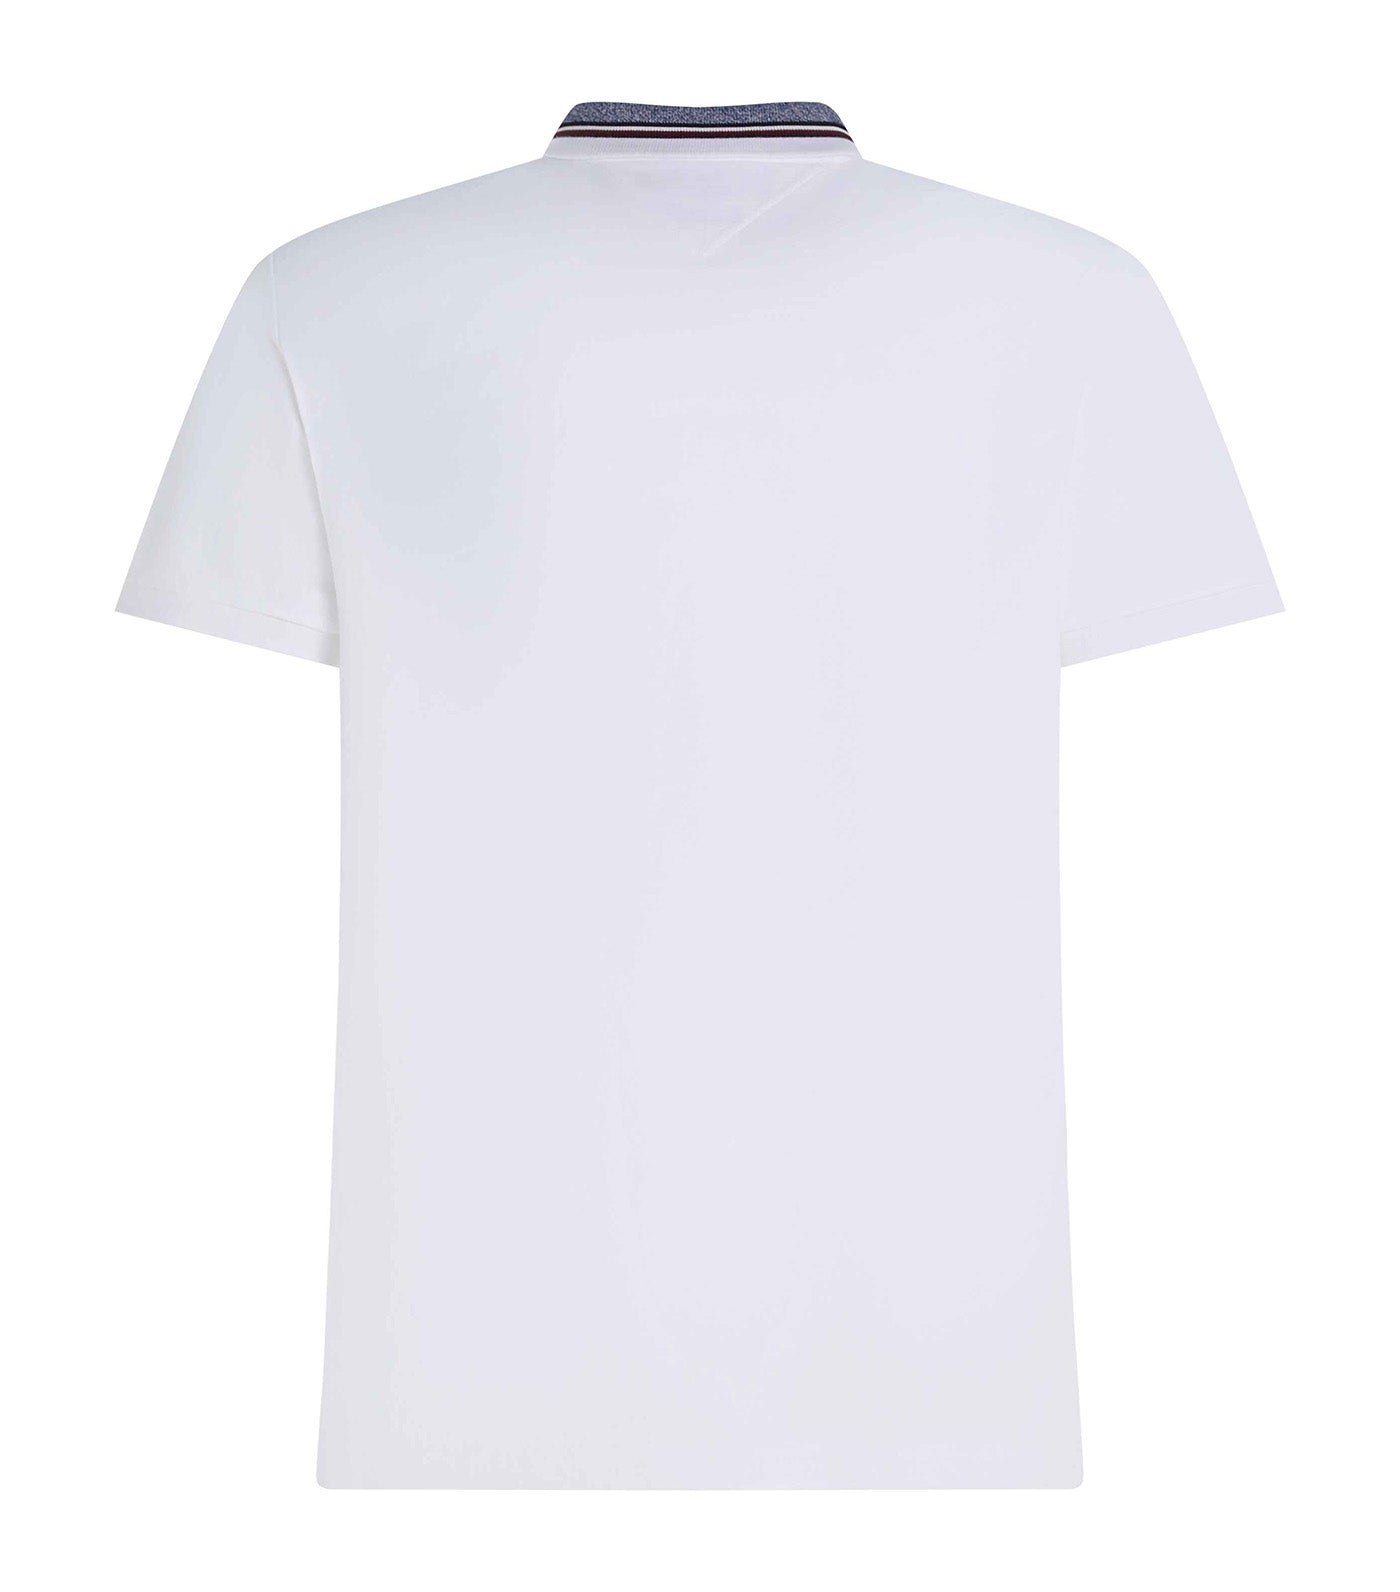 Men's WCC Mouline Collar Regular Polo Shirt White